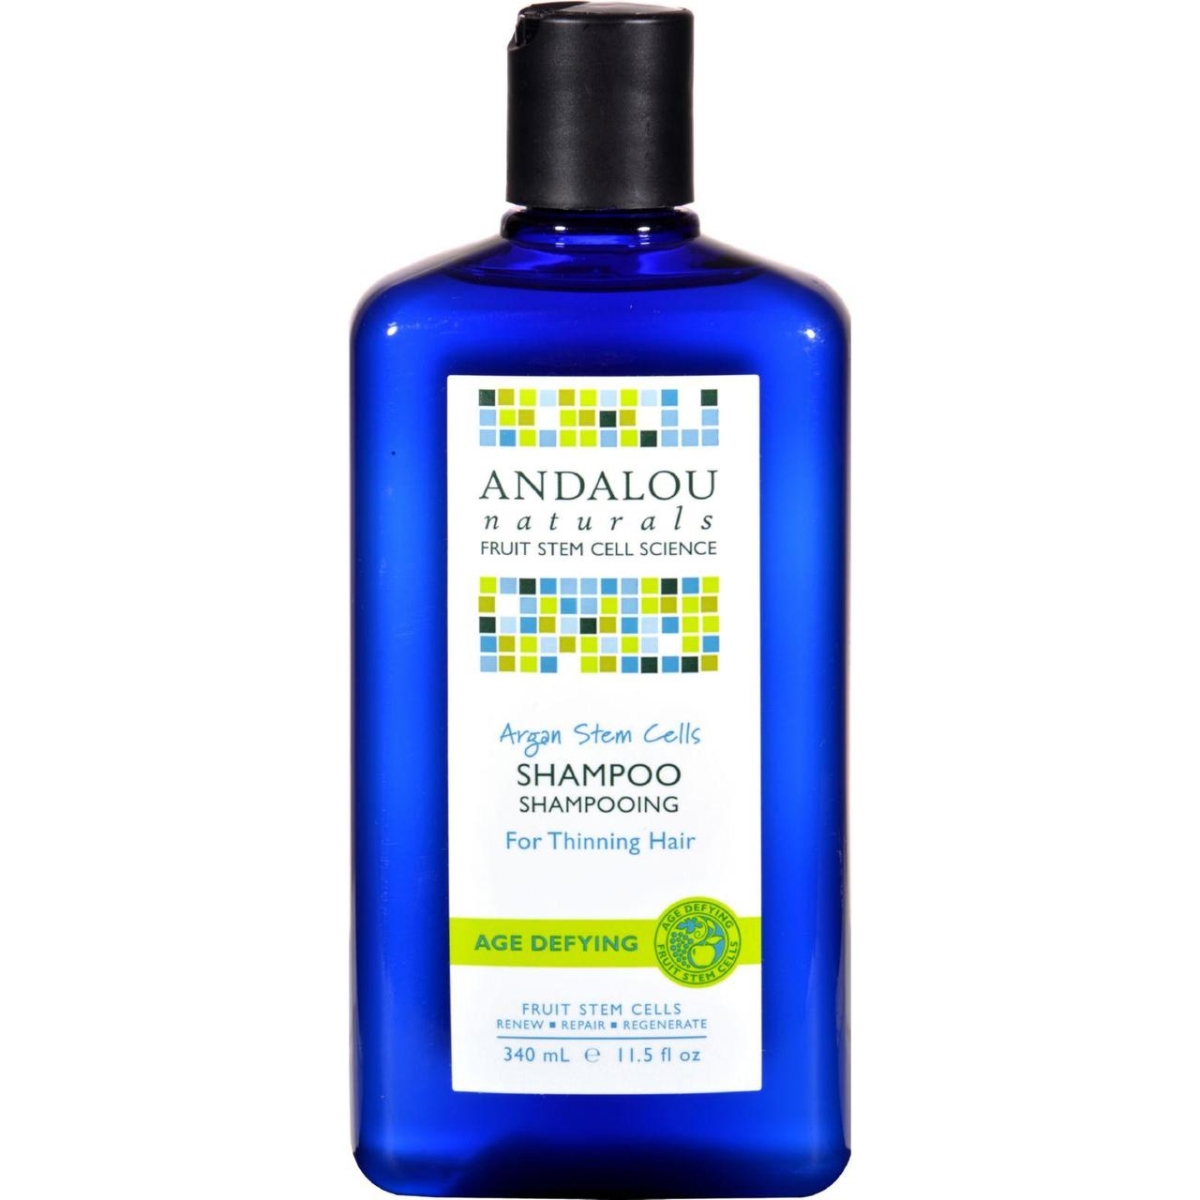 Hg1064856 11.5 Fl Oz Age Defying Shampoo With Argan Stem Cells